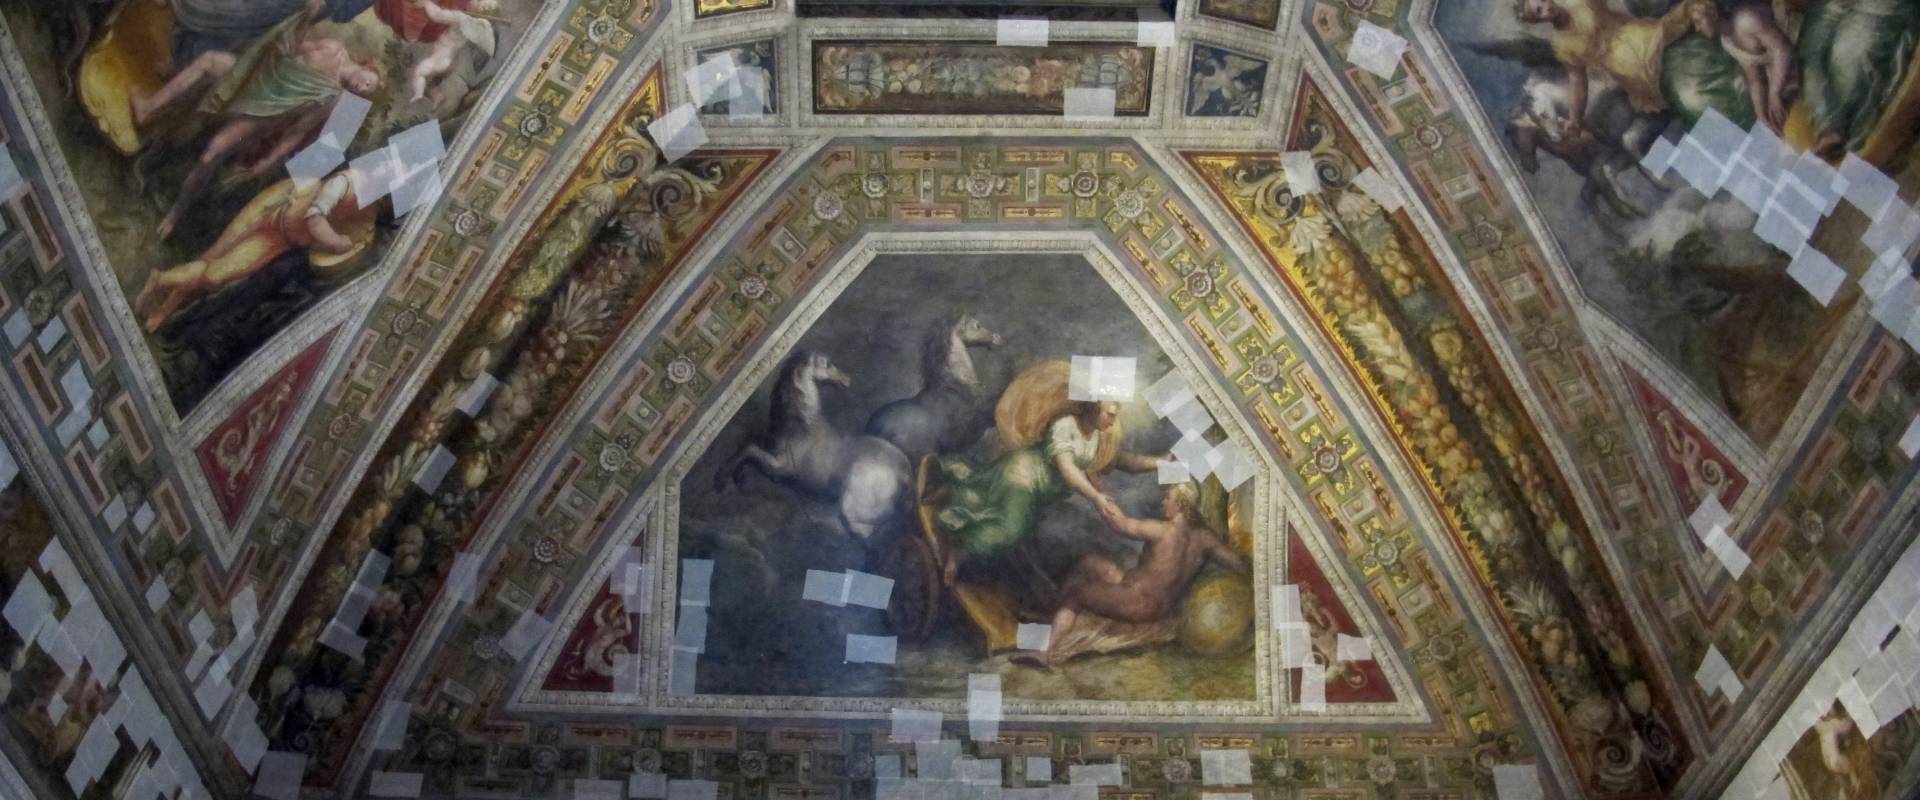 Castello estense di ferrara, int., sala dell'aurora, affreschi di ludovico settevecchi e leonardo da brescia (1574-75) 02 photo by Sailko